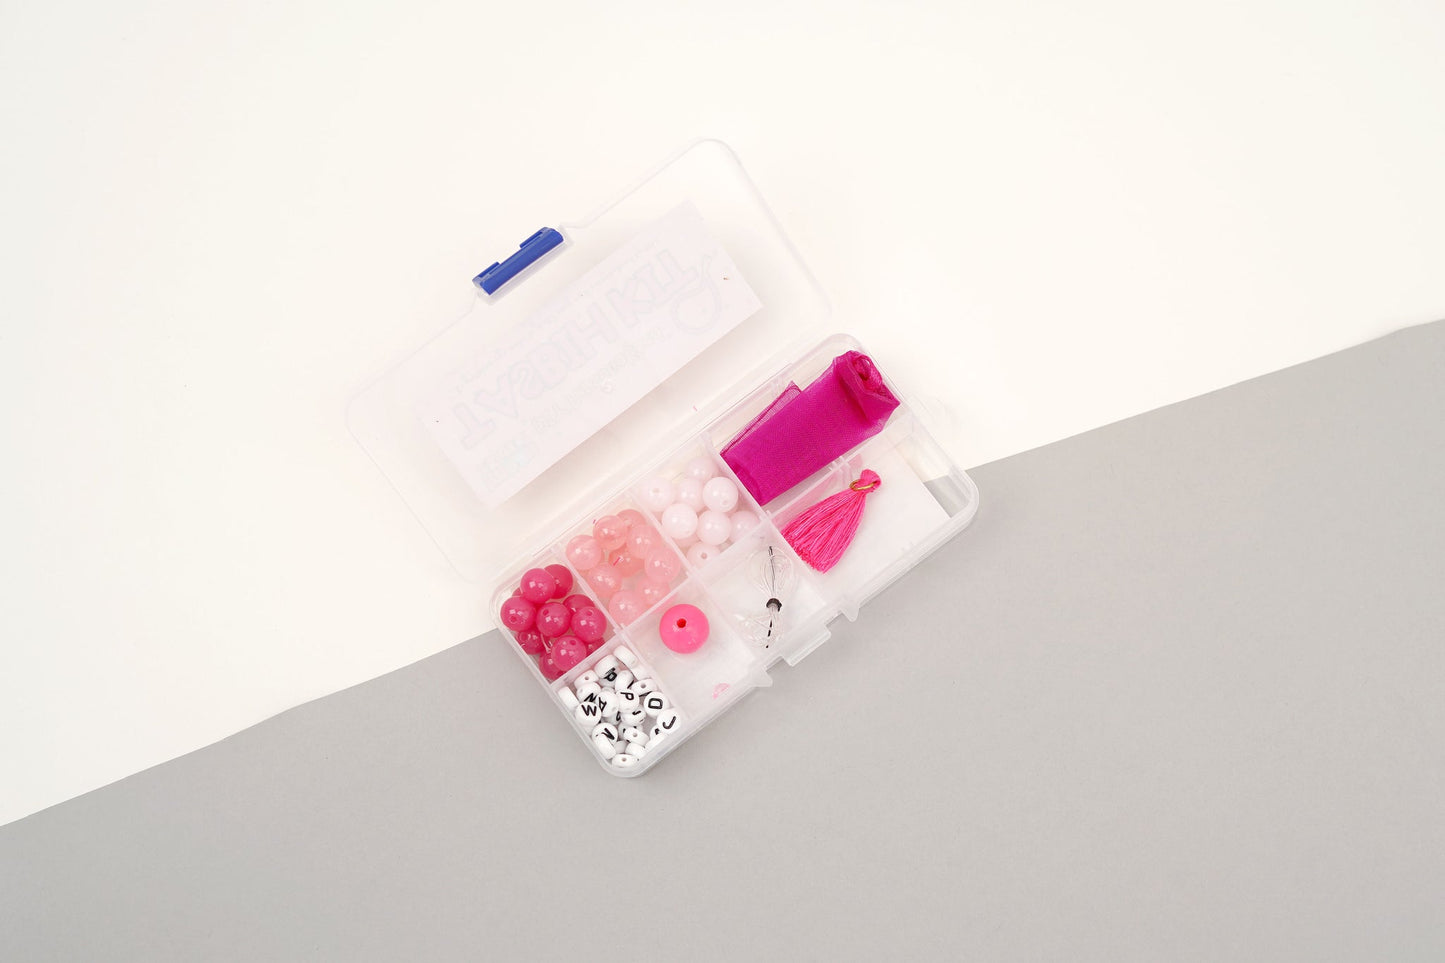 DIY Personalised Tasbih Making Kit - Pink